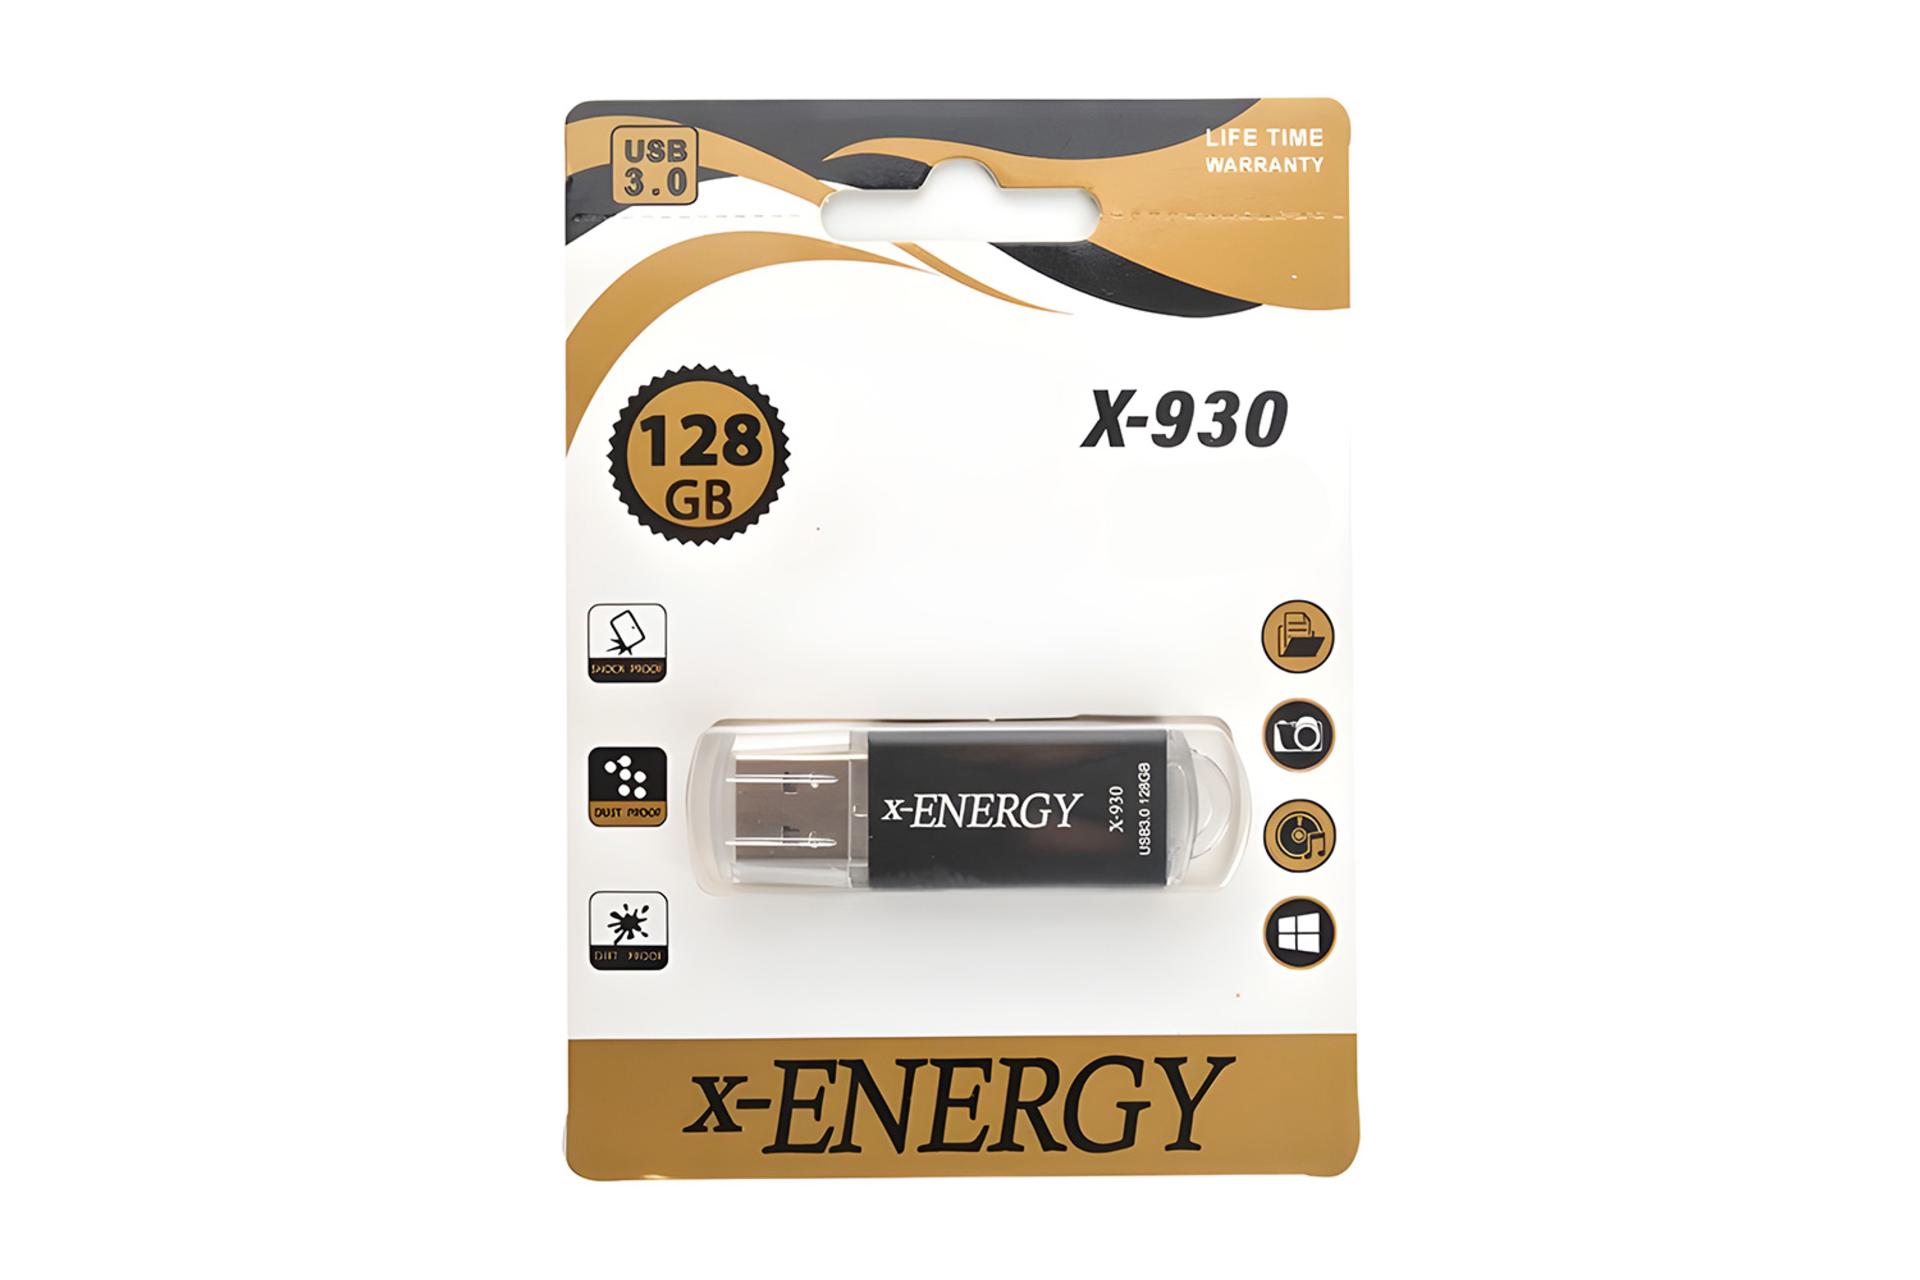 جعبه فلش مموری ایکس انرژی x-Energy X-930 128GB USB 3.0